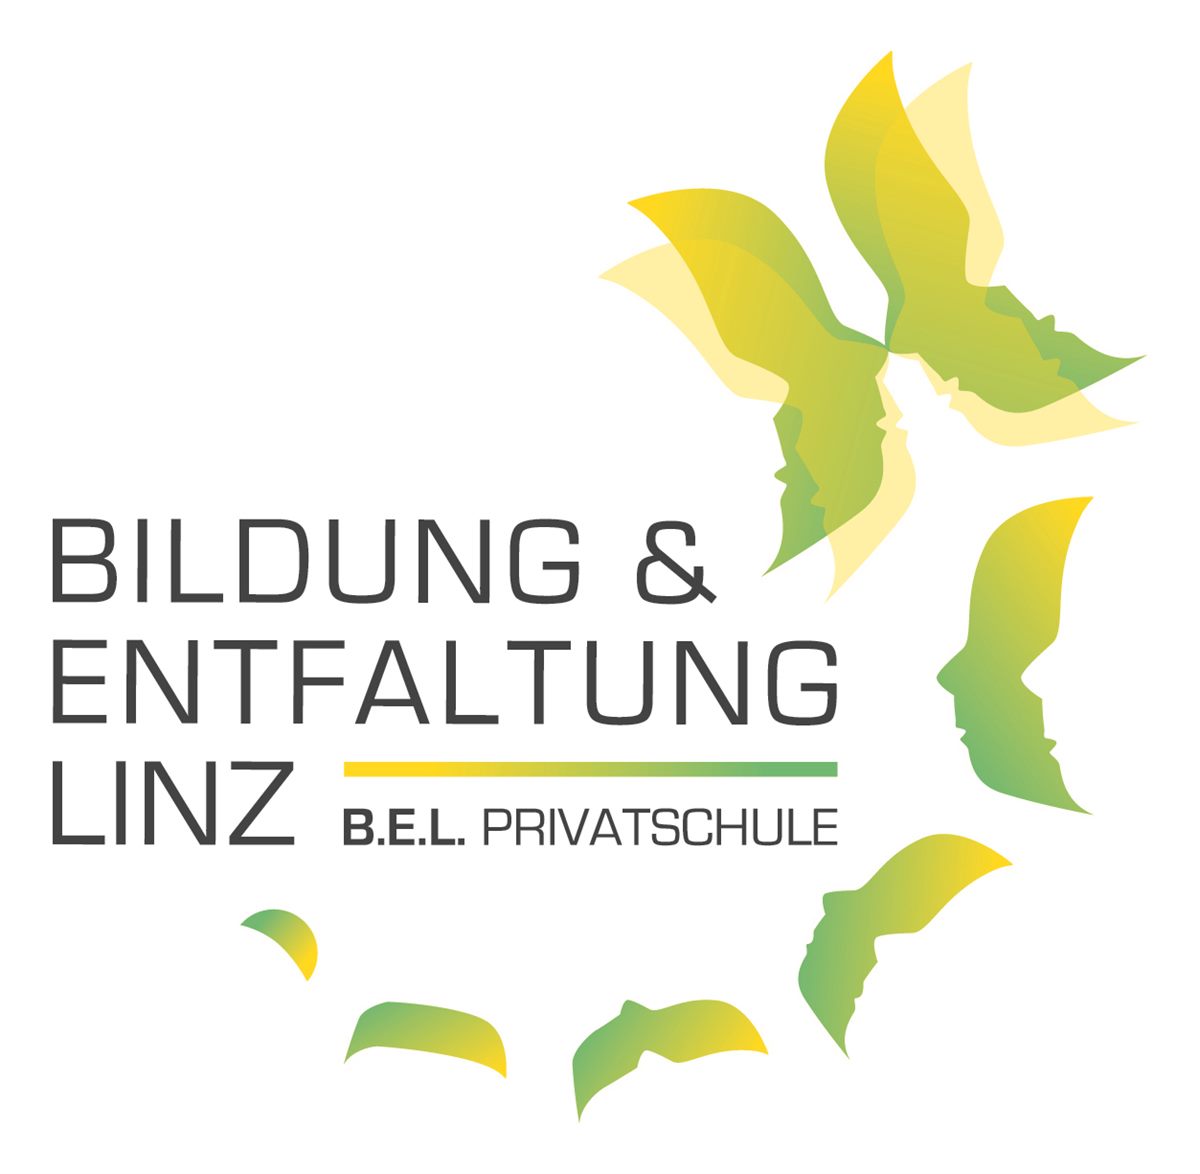 B.E.L. Privatschule Linz